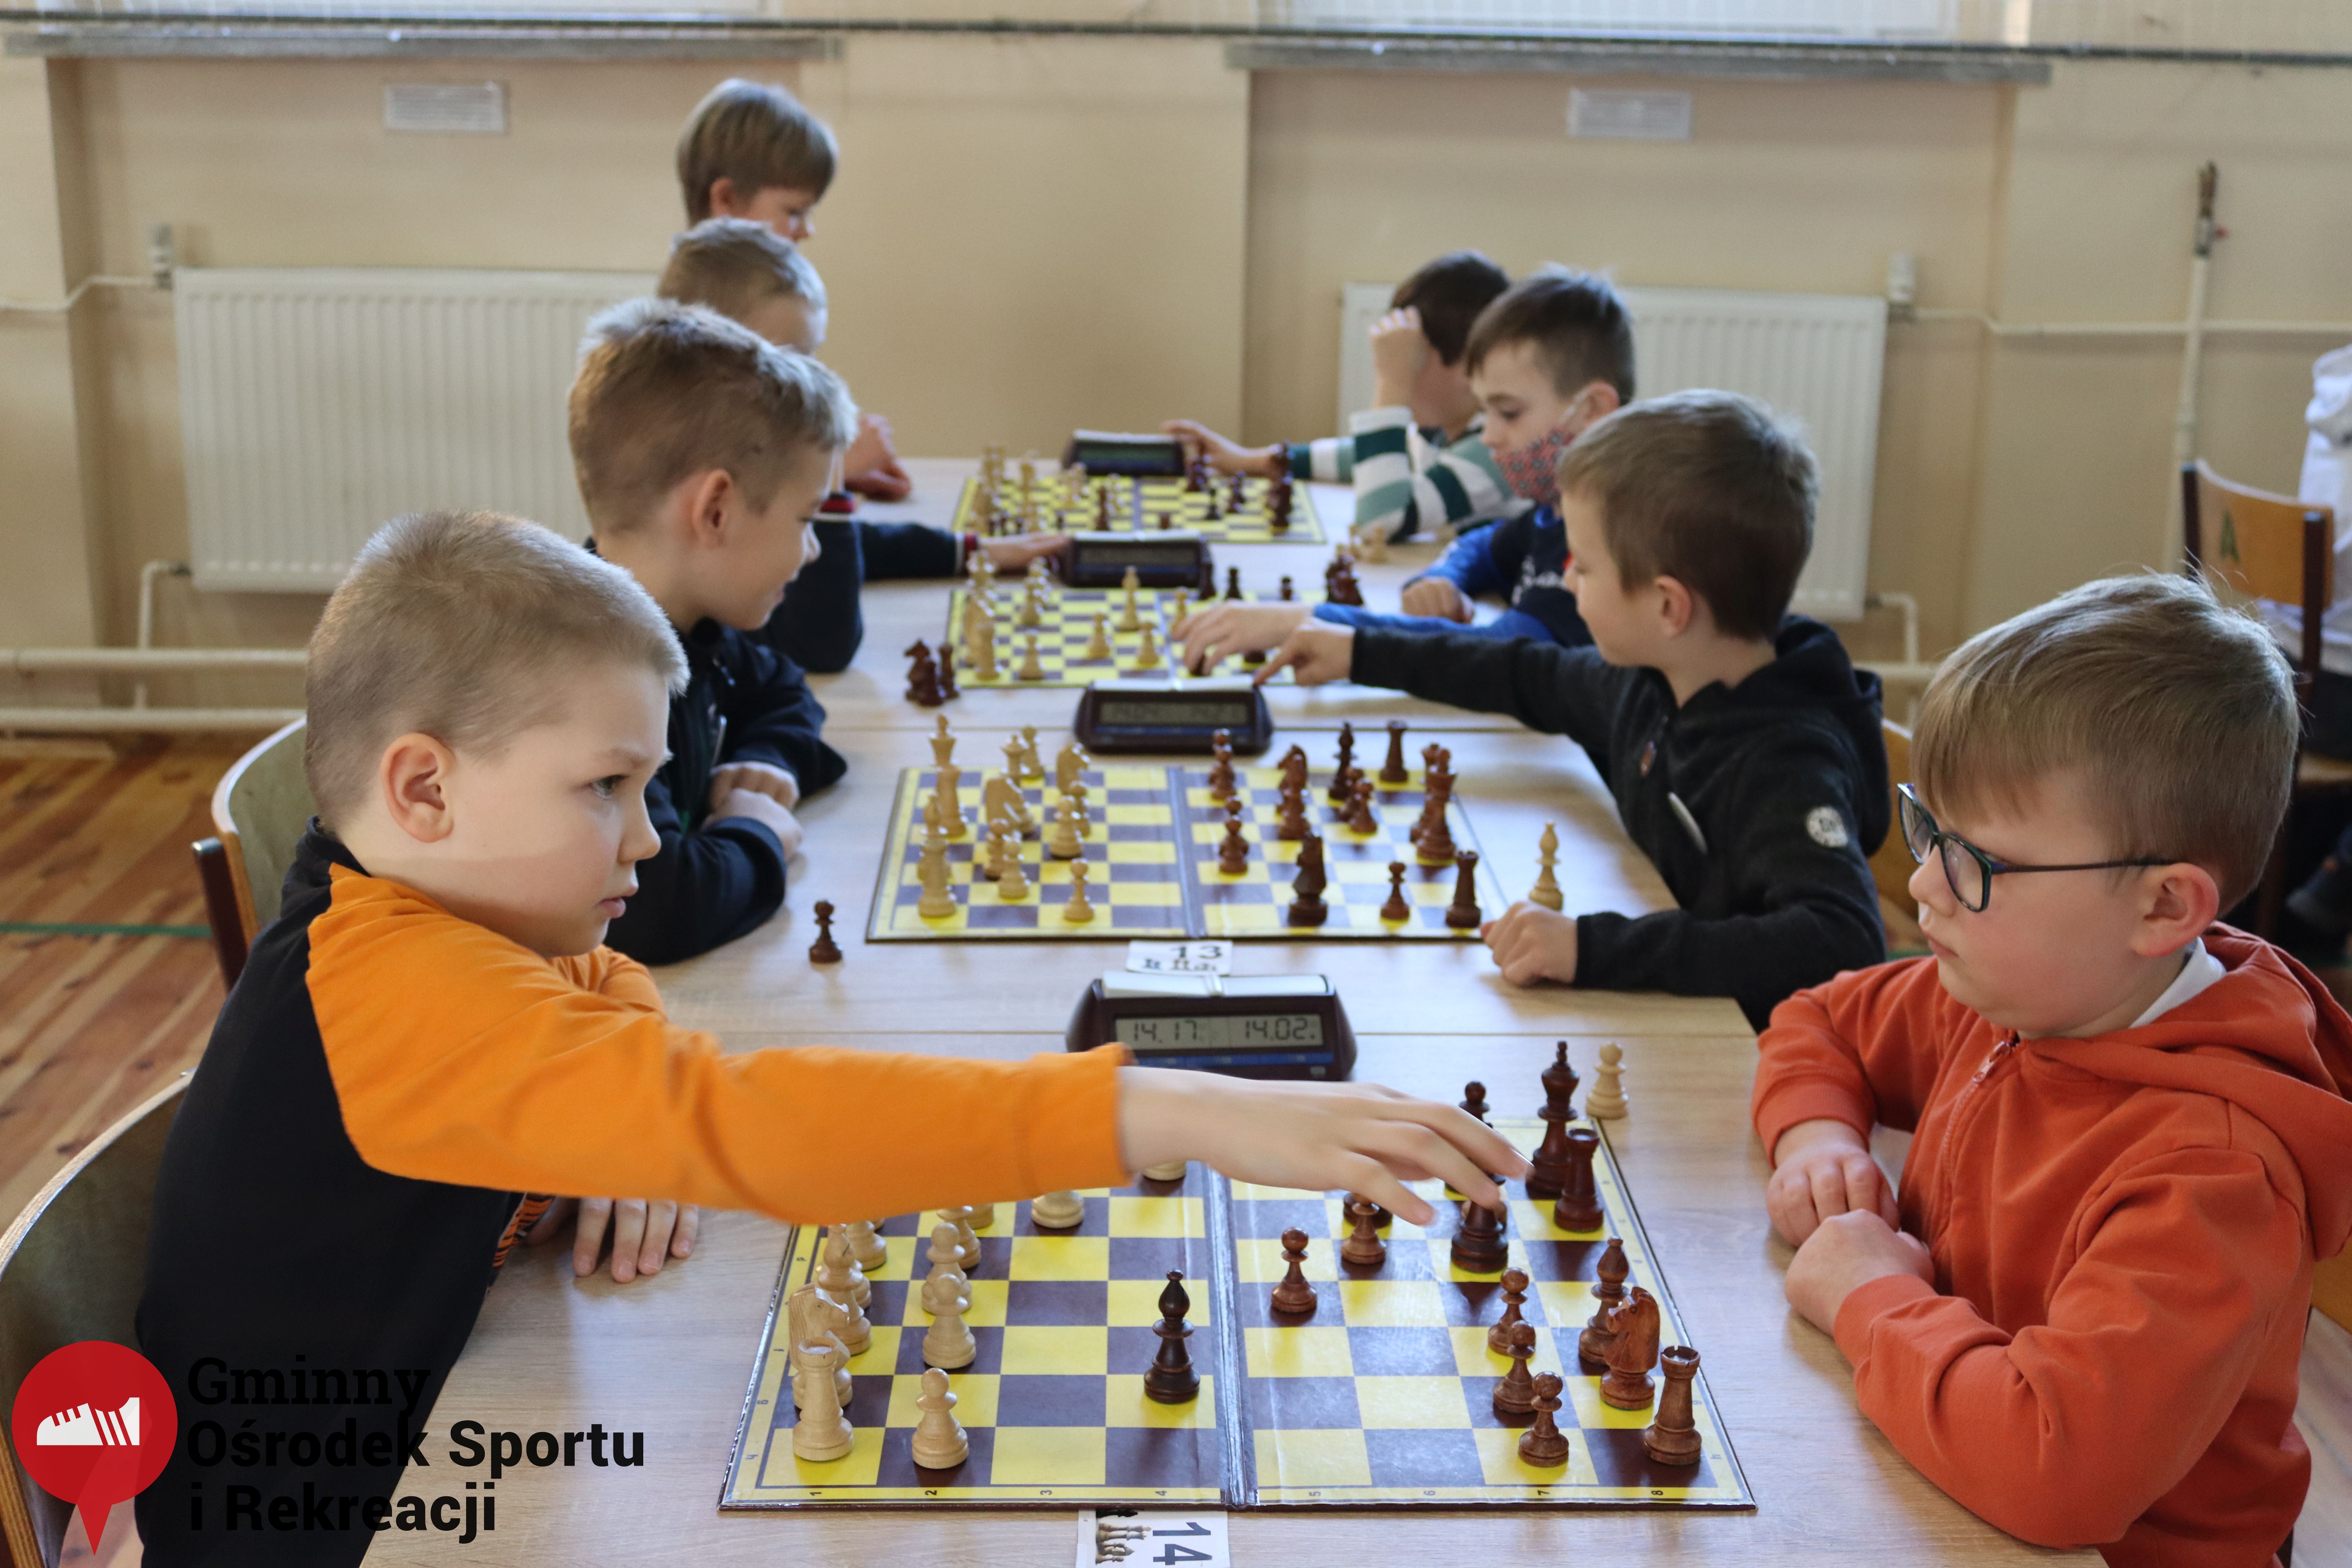 2022.03.12-13 Turniej szachowy - Edukacja przez Szachy029.jpg - 1,92 MB